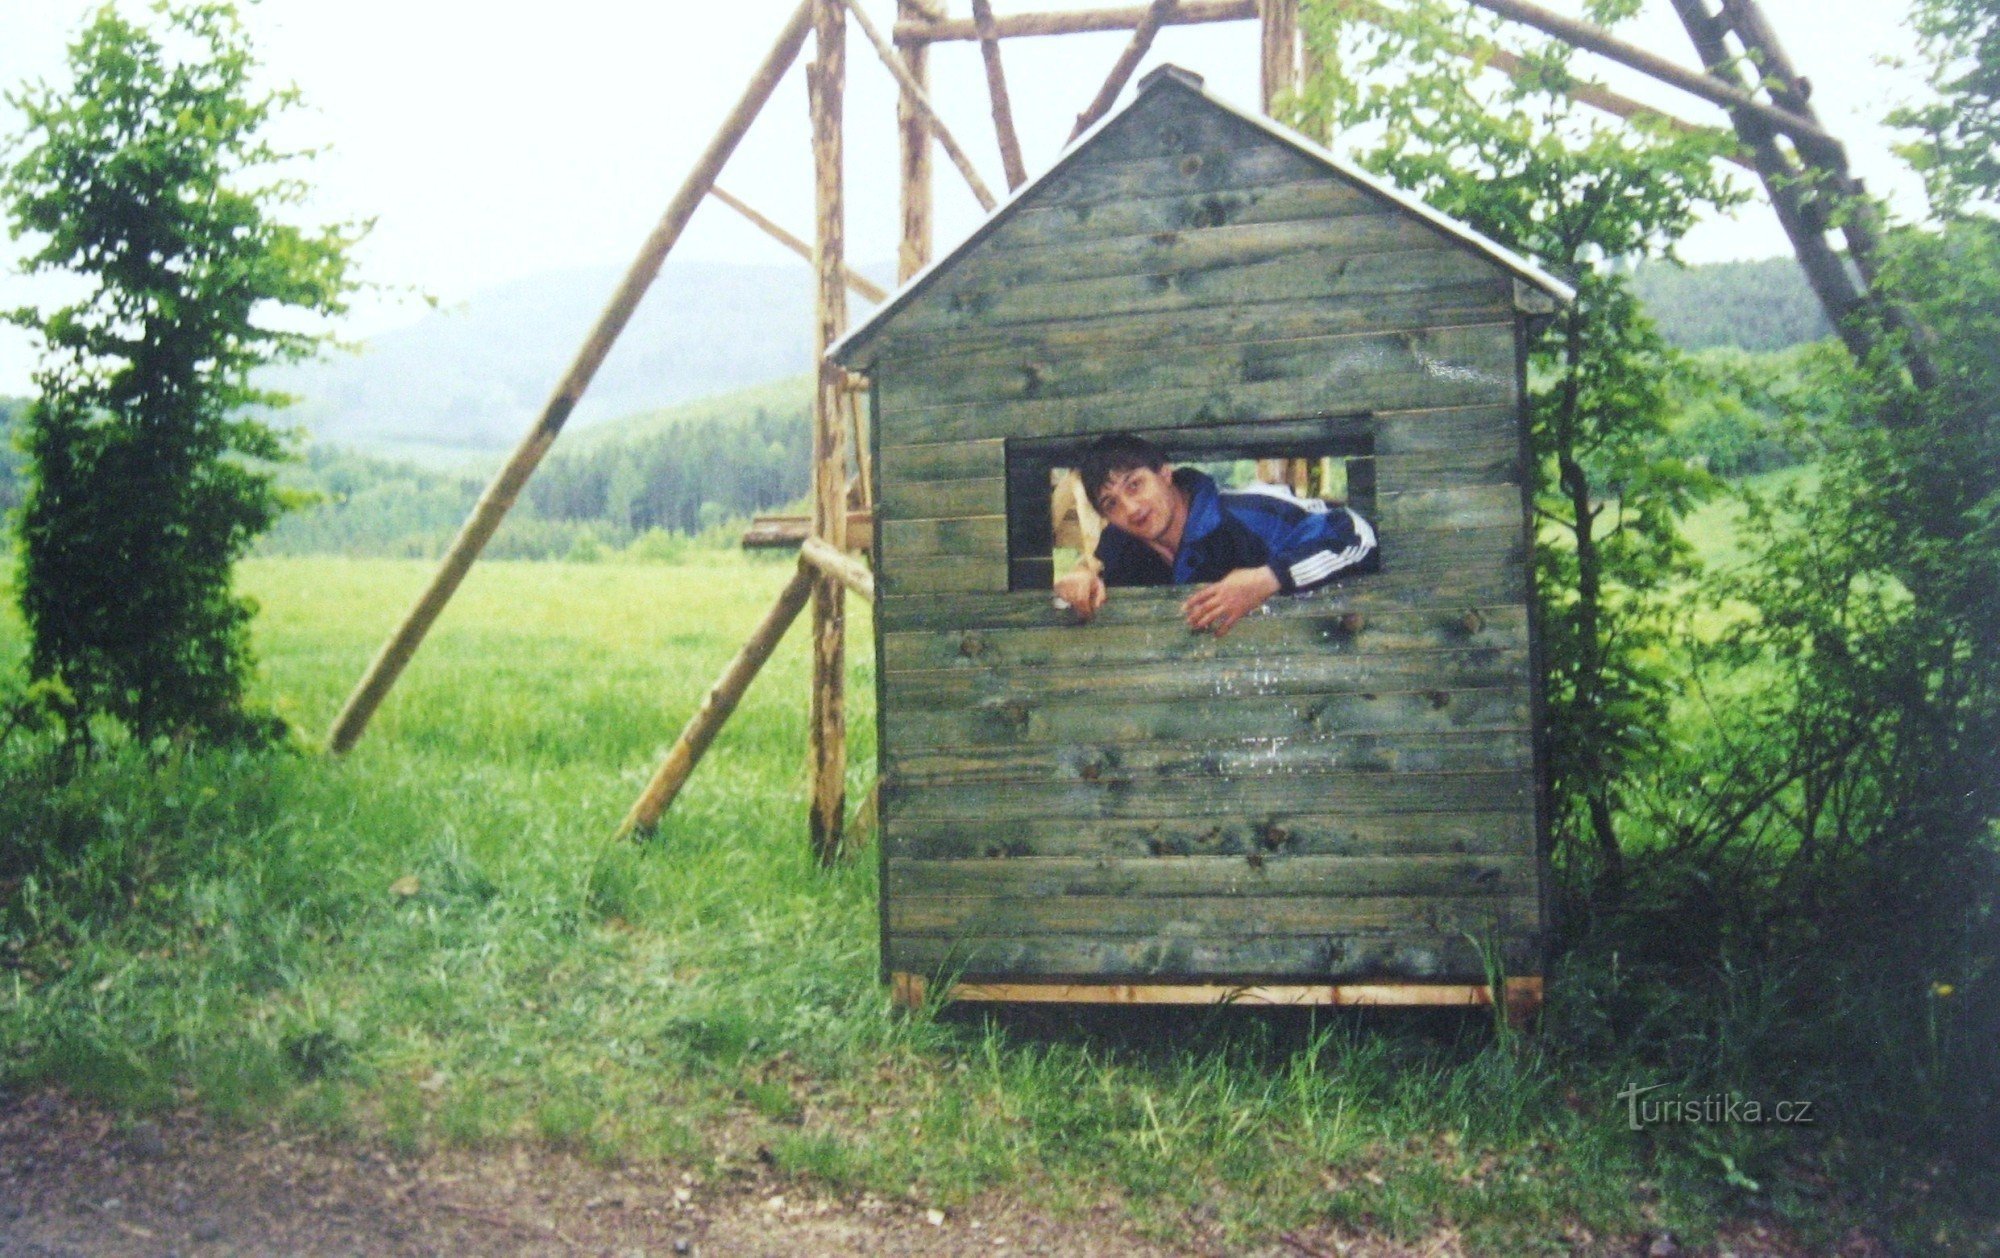 2004 年 Chřiby 远征队